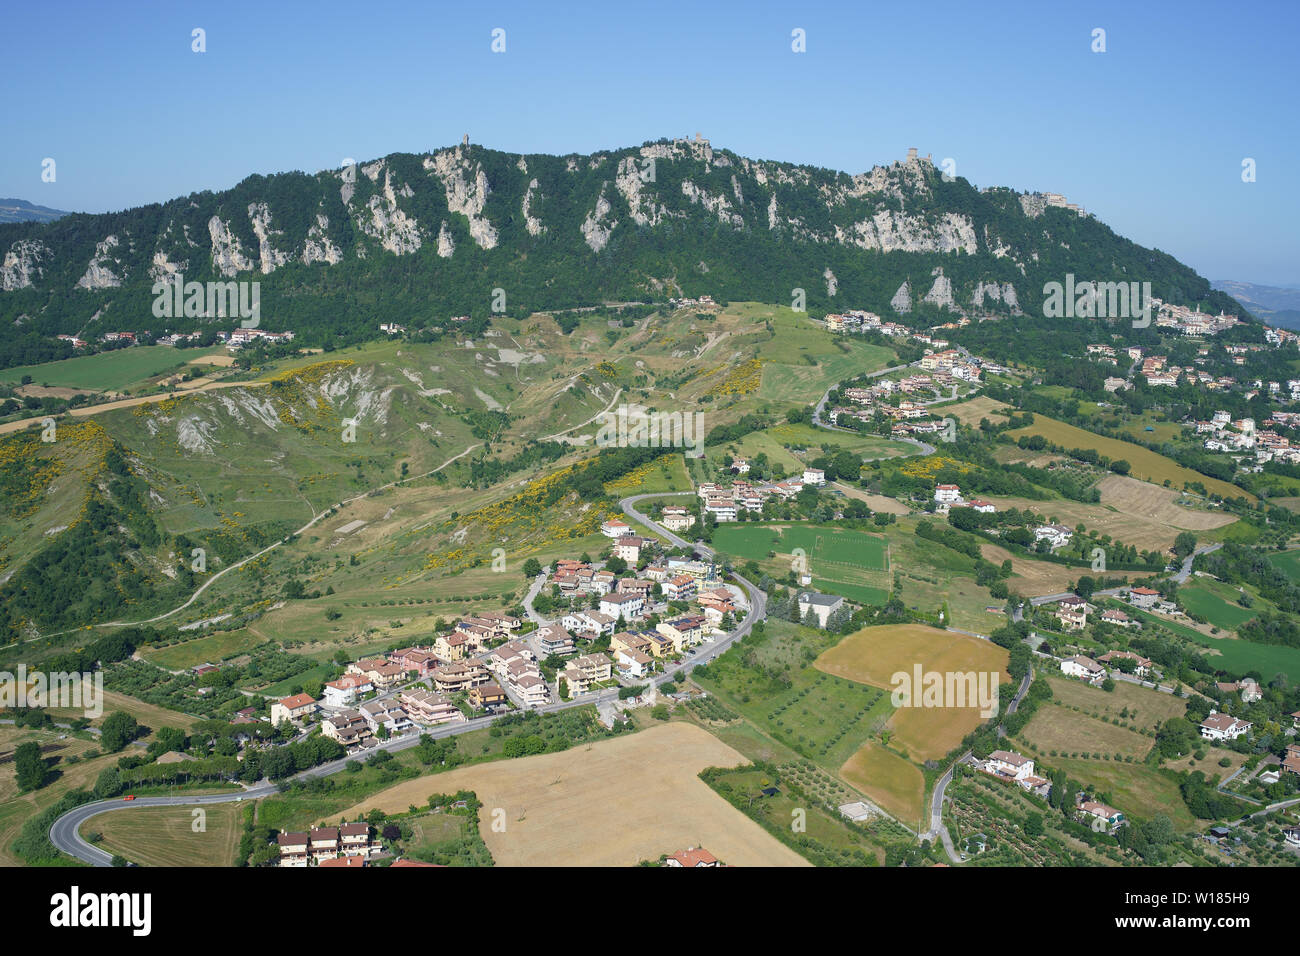 VISTA AÉREA. Monte Titano (elevación: 749m, punto más alto del país) con vistas a un paisaje de tierras de labranza y pueblos. República de San Marino. Foto de stock